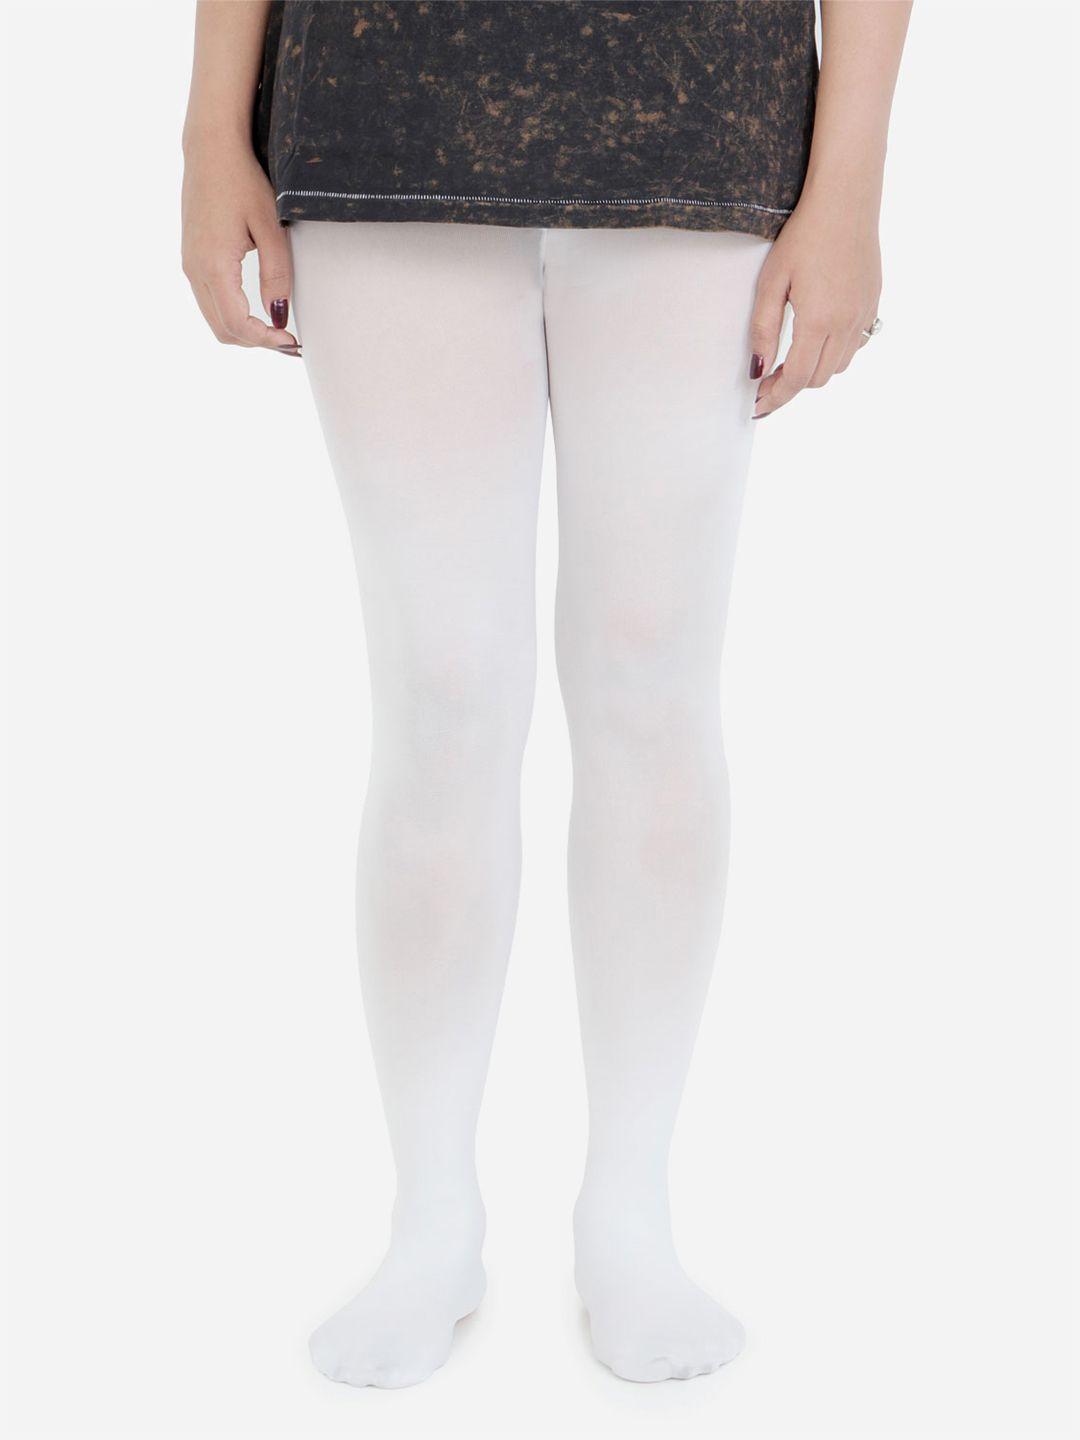 bonjour women white solid stockings